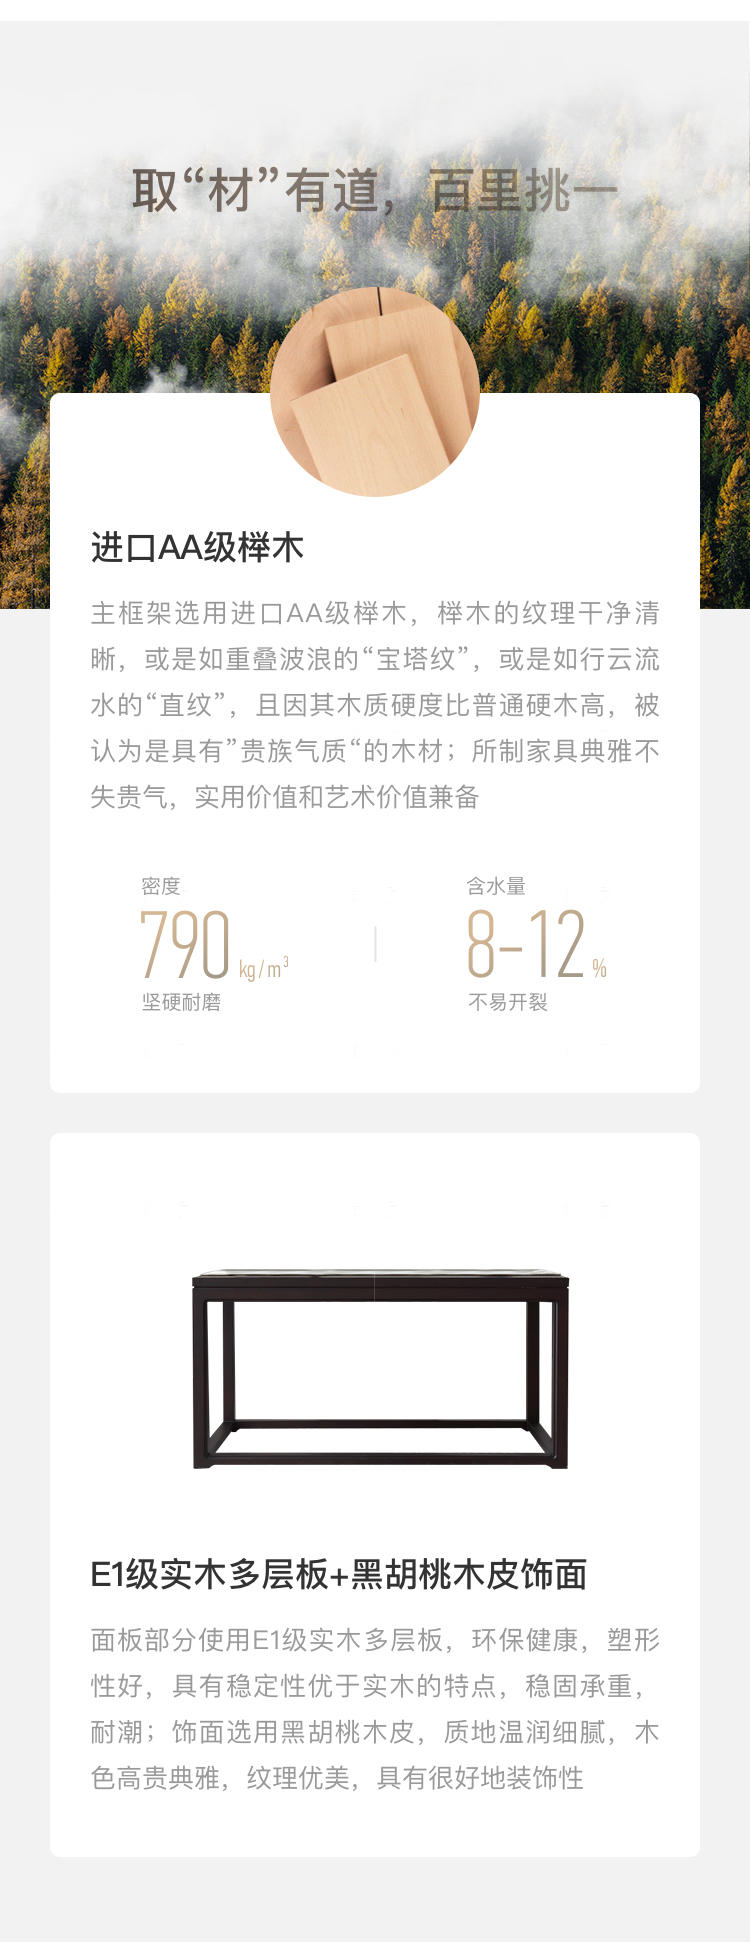 中式轻奢风格西凝茶桌的家具详细介绍